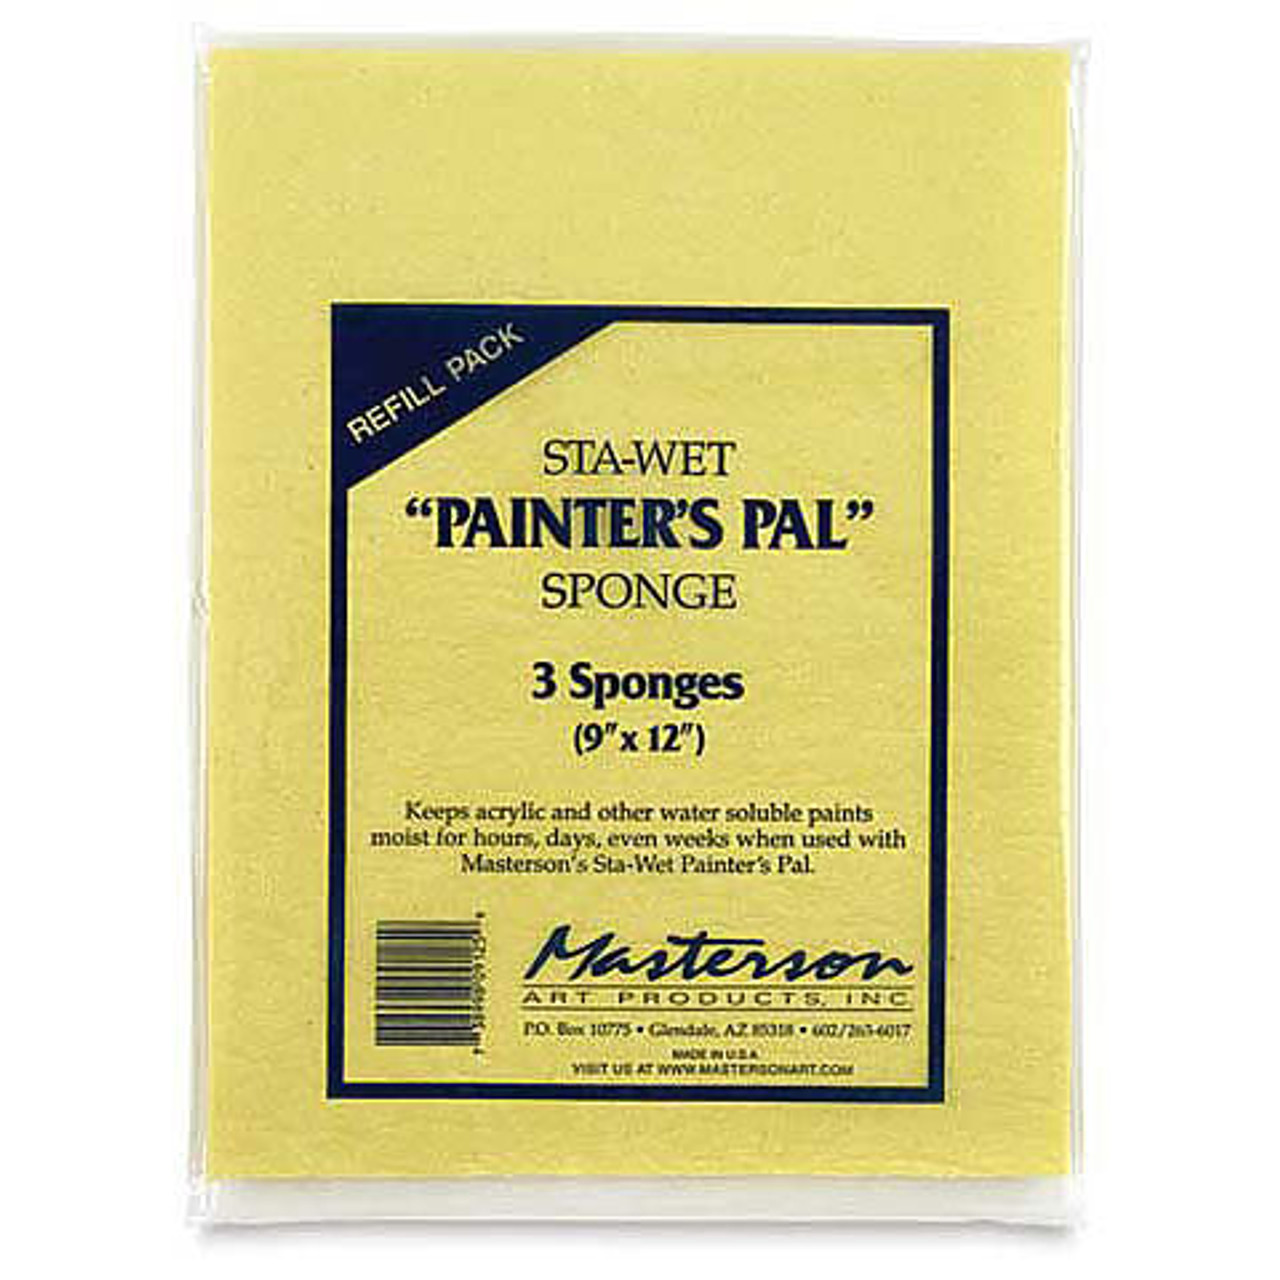 Masterson Sta-Wet Handy Palette Sponge Refill 3 Pack